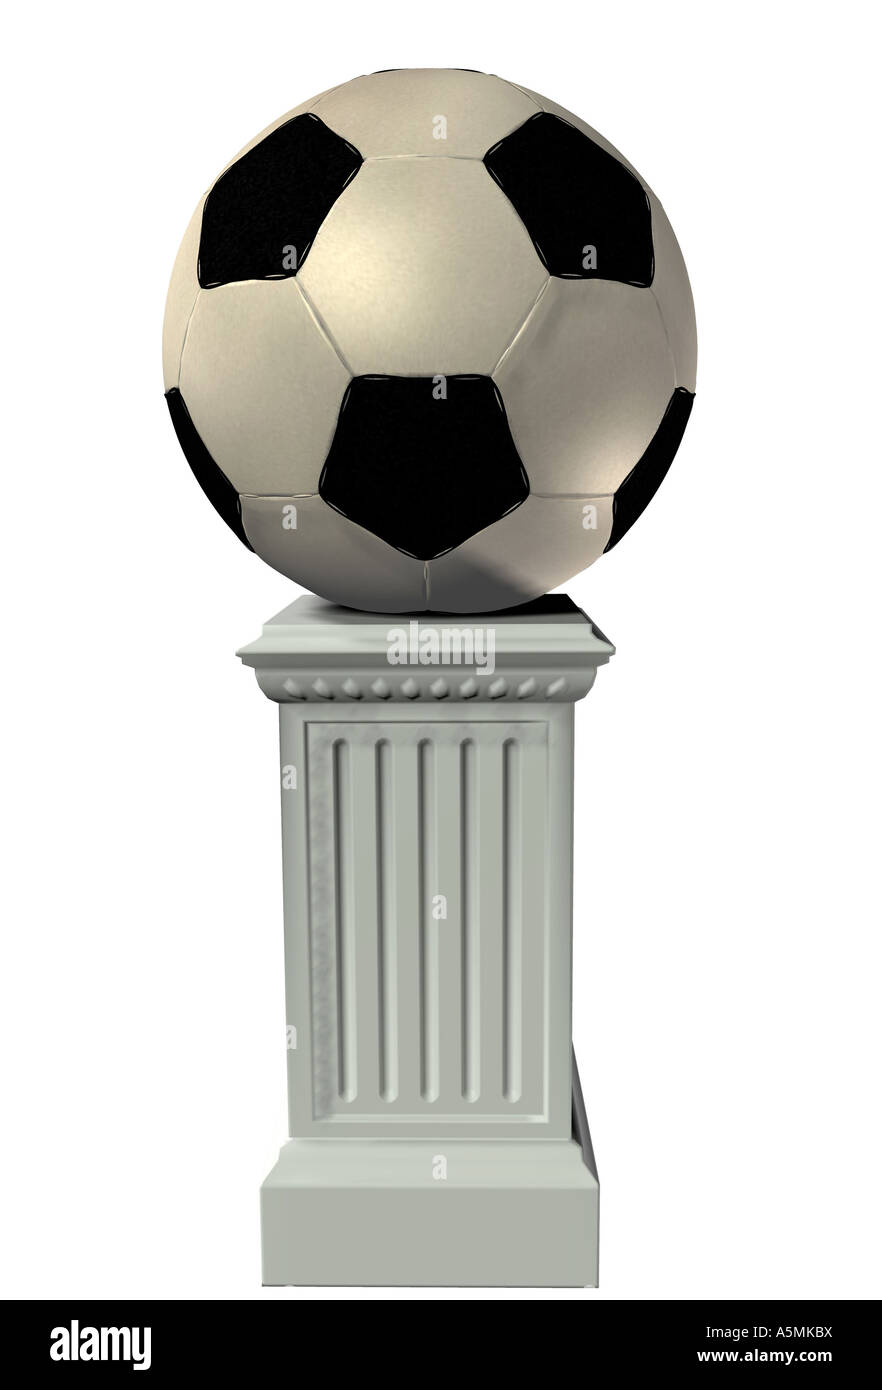 Fußball am Podest football on a pedestal Stock Photo